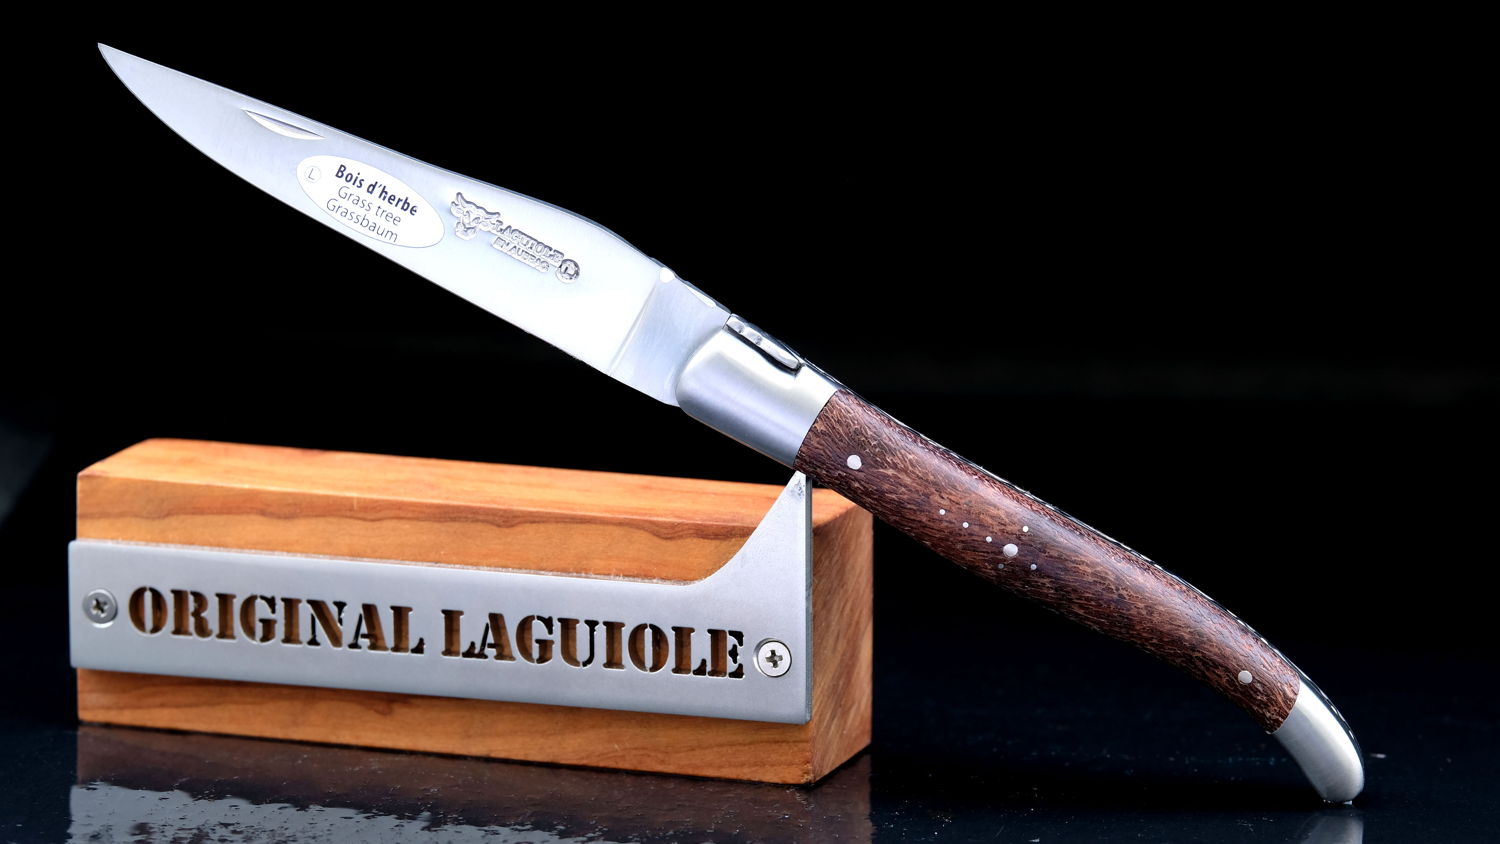 Original laguiole - Taschenmesser Laguiole en Aubrac, Brosse, Grasbaum, guillochierte Biene